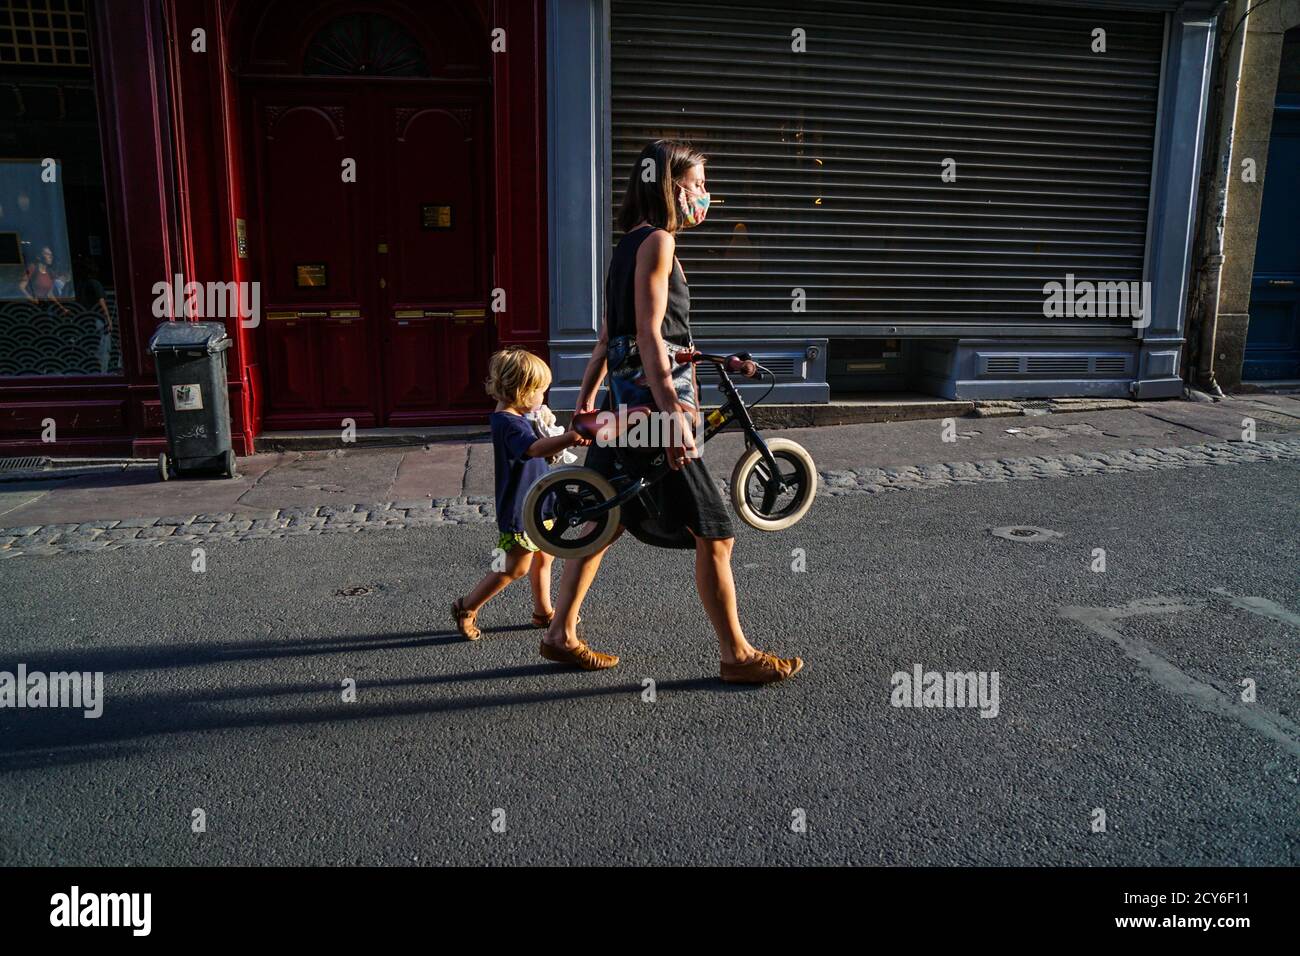 Bordeaux - 08/27/2020: Mère avec bycicle et enfant à la main dans les rues Banque D'Images